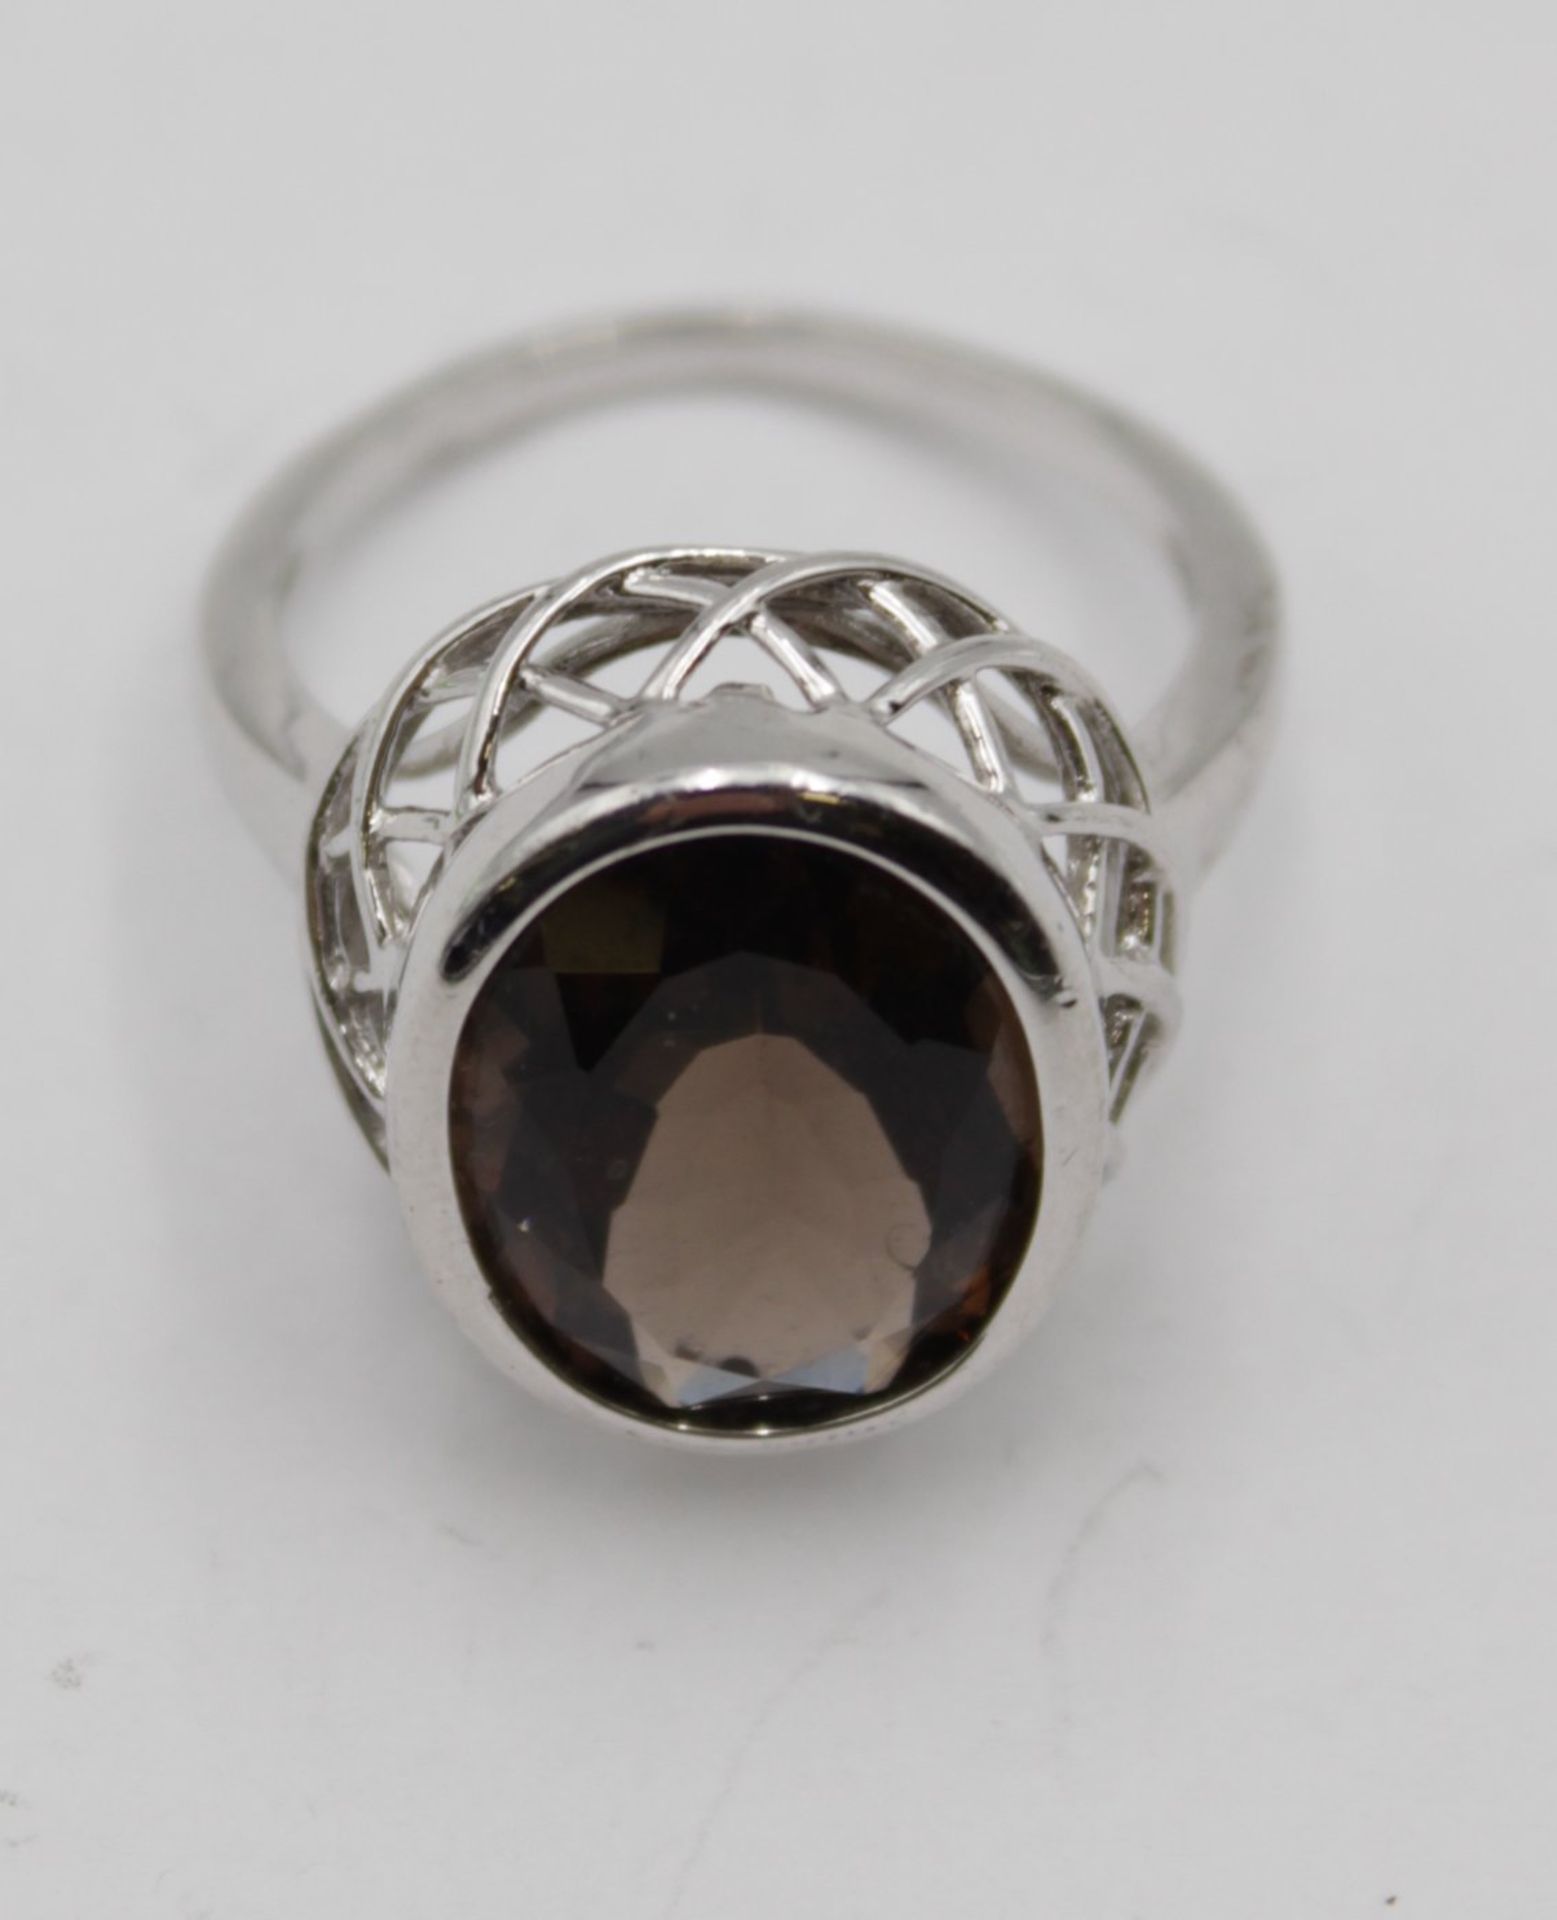 925er Silber-Ring, facc. brauner Stein, ca. 6,5gr.m, RG 59